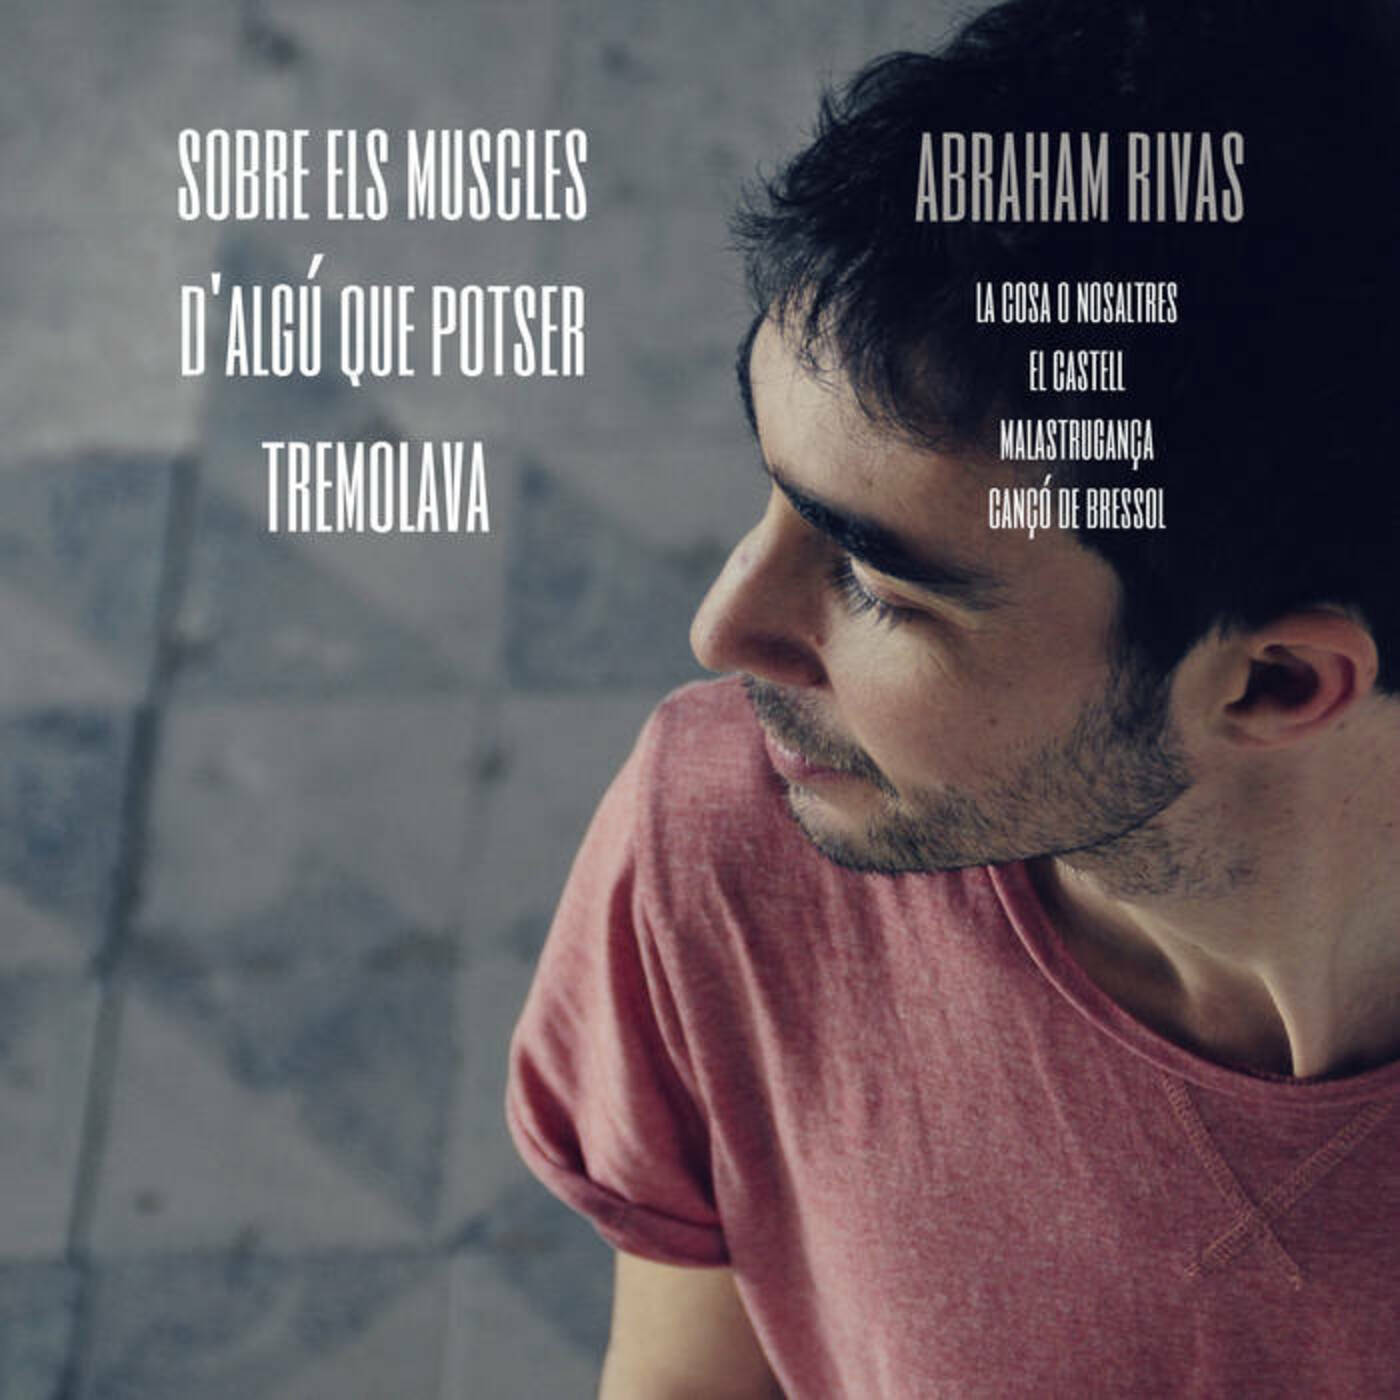 Abraham Rivas - Sobre els muscles d'algú que potser tremolava | musica en valencià